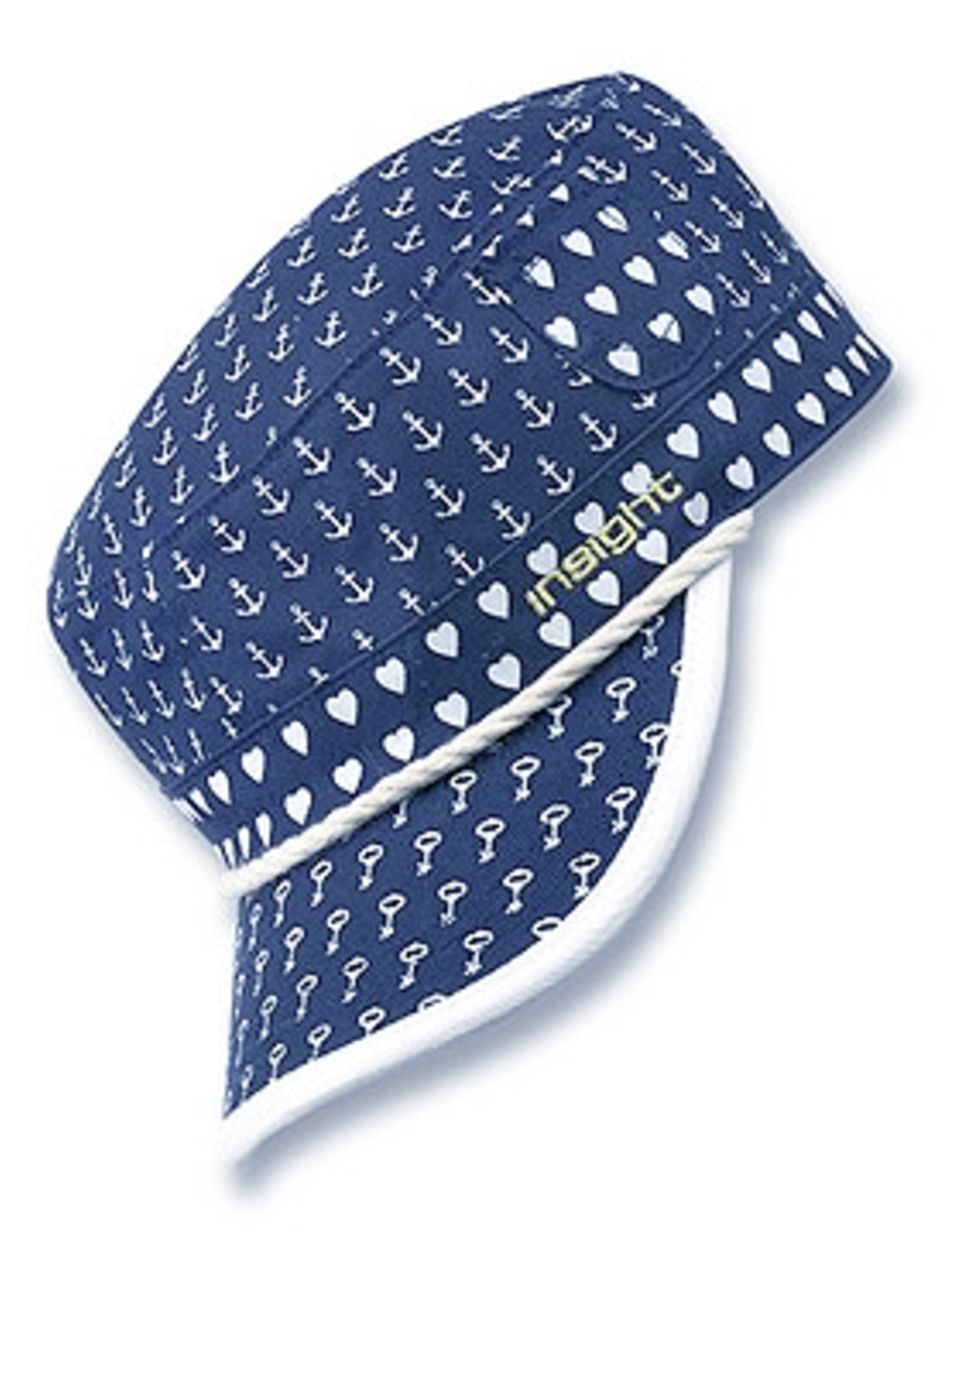 Maritim designte Schirmmütze mit seitlicher Taschenapplikation und rückseitig individuell verstellbarem Größenriegel; 29,99 Euro; von INSIGHT über www.frontlineshop.com